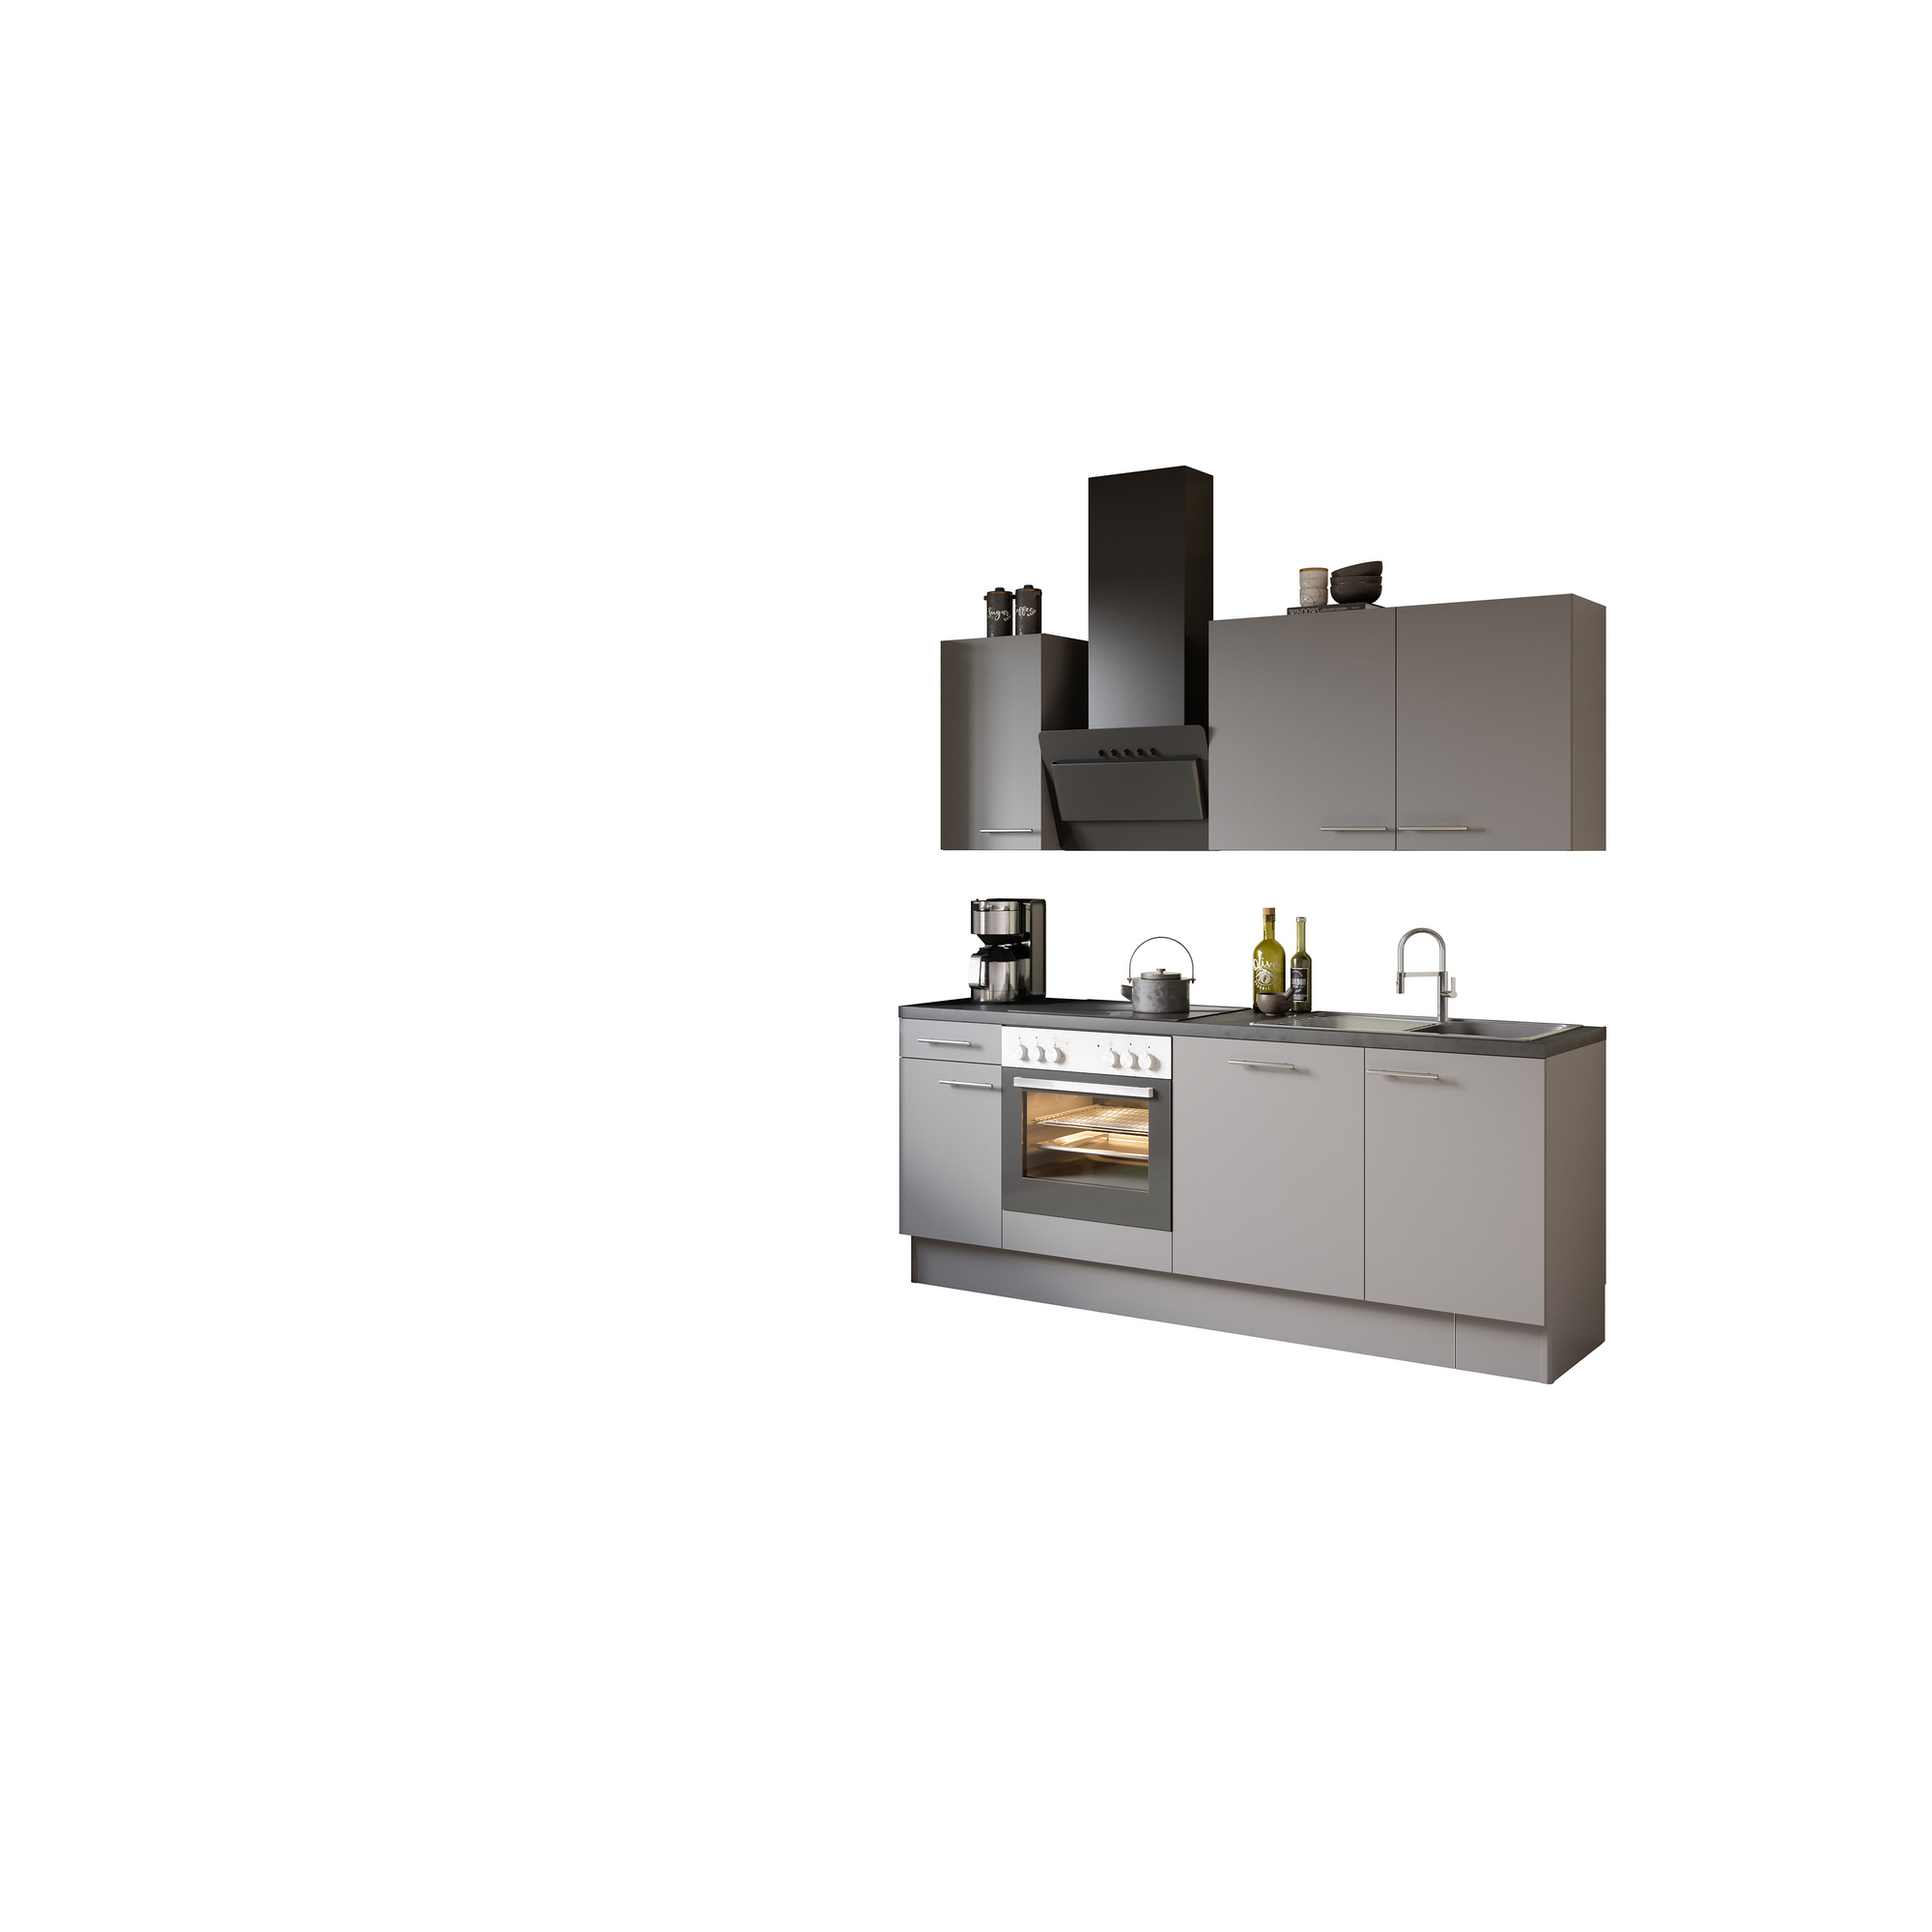 Küchenzeile mit E-Geräten 'OPTIkoncept Mats825' grau 210 cm + product picture